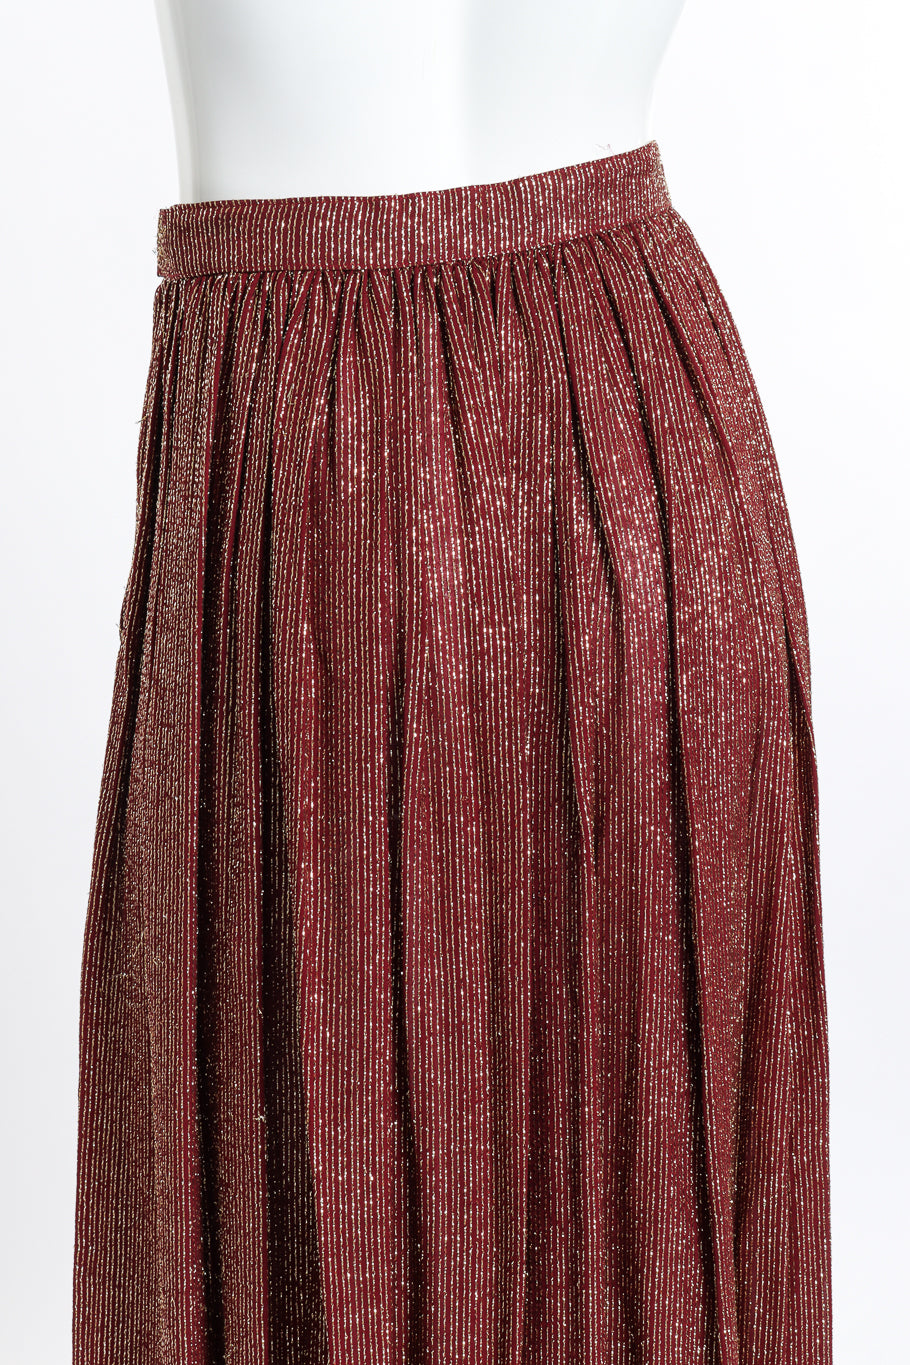 Vintage Adolfo Lamé Blouse & Pleated Skirt Set skirt back on mannequin closeup @recess la